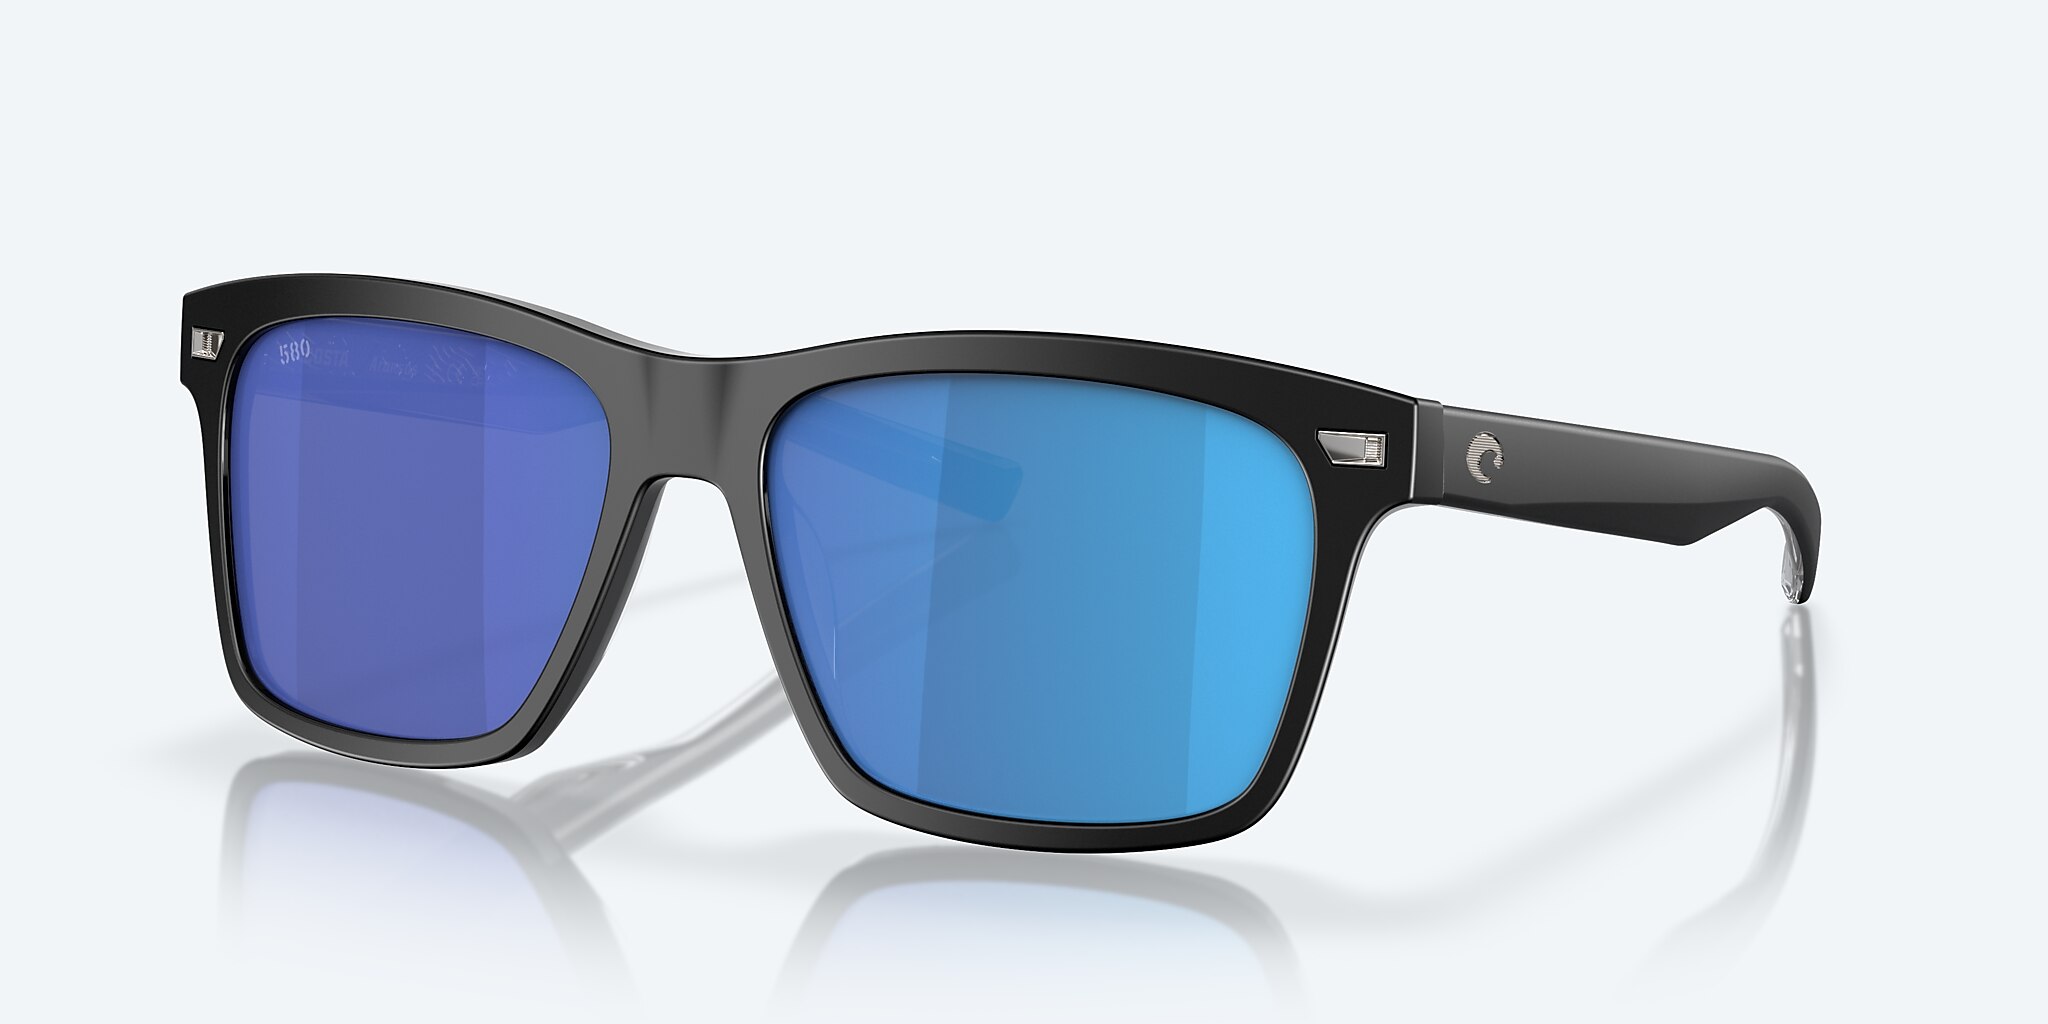 Aransas Polarized Sunglasses in Blue Mirror | Costa Del Mar®